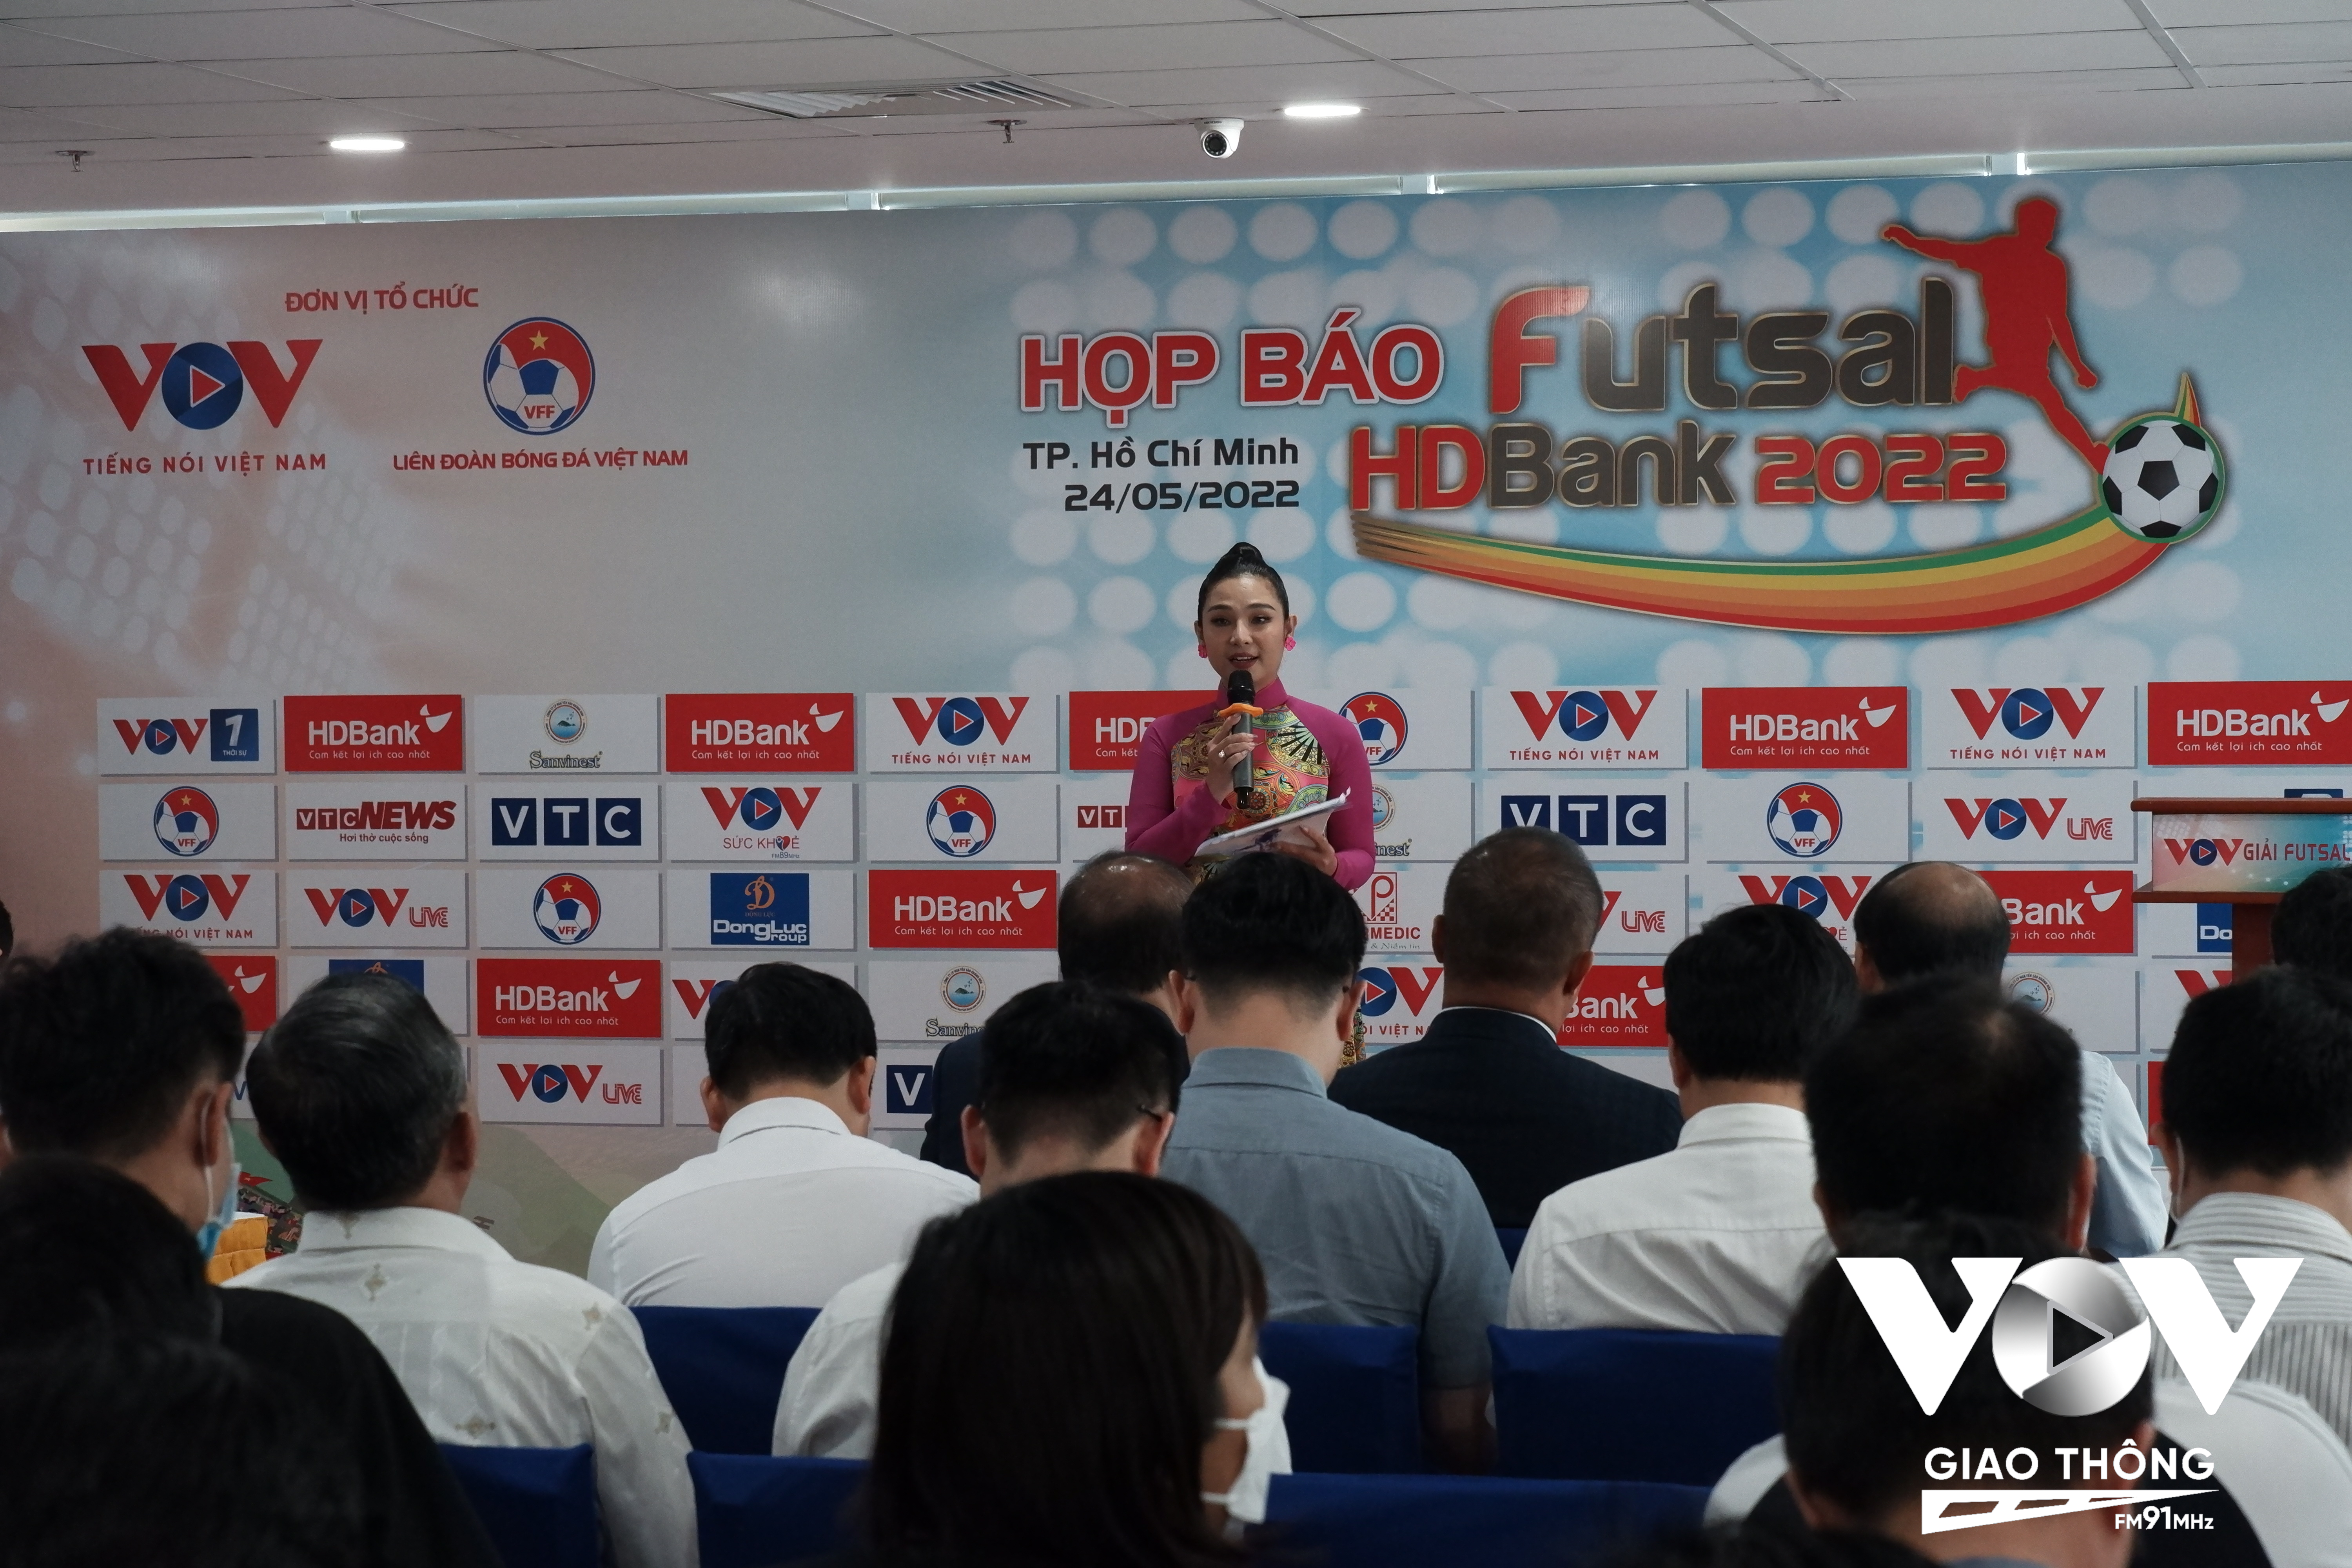 Lễ công bố Giải Futsal HDBank Vô địch Quốc gia và Cúp Quốc gia 2022 tổ chức tại Tòa nhà Đài Tiếng nói Việt Nam.